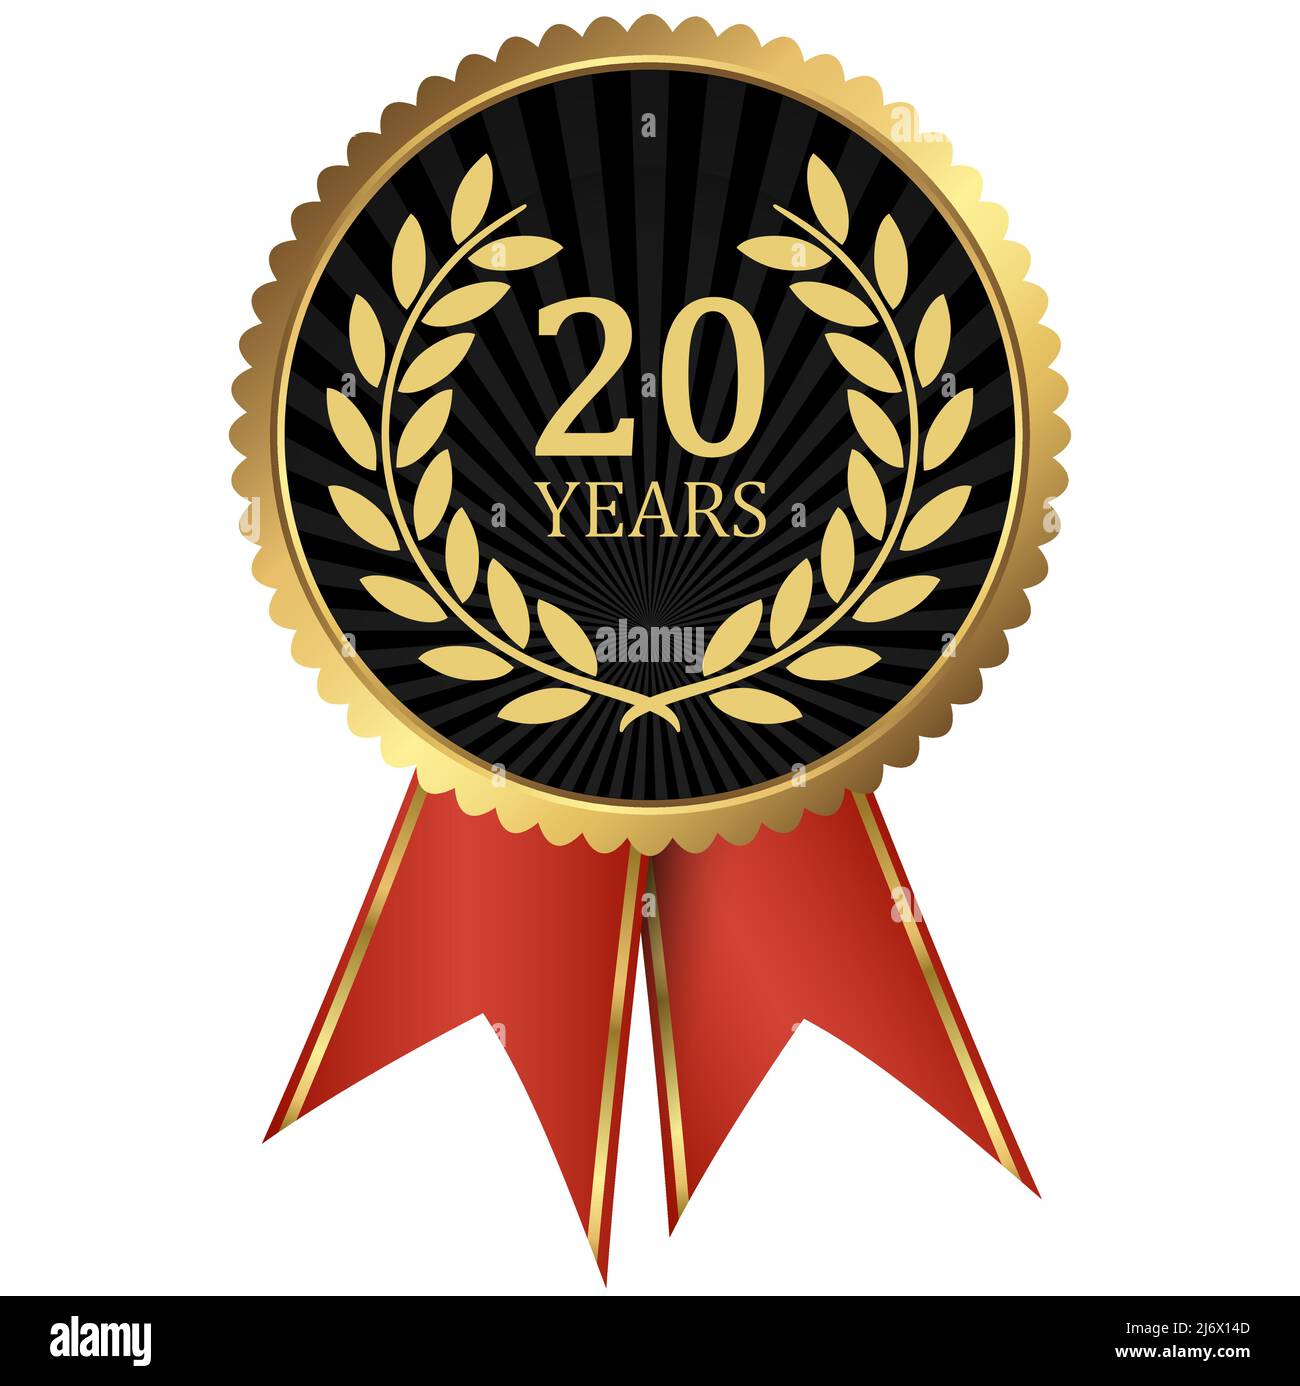 fichier vectoriel eps avec médaillon d'or avec couronne de laurier pour le succès ou jubilé ferme et texte 20 ans Illustration de Vecteur